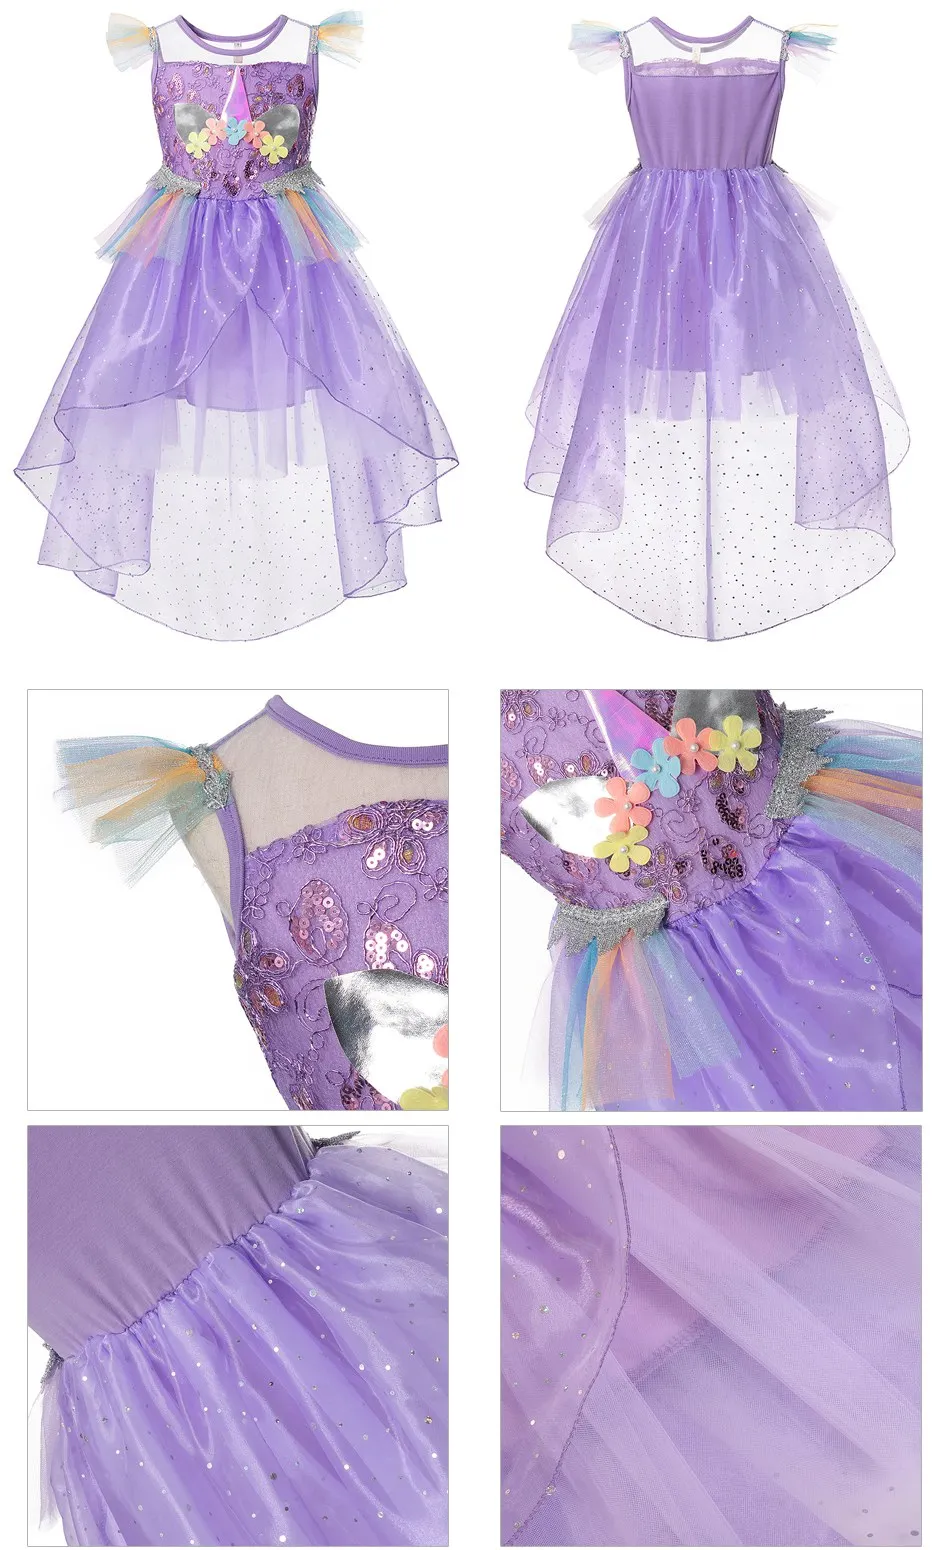 VOGUEON/платье с единорогом для девочек; Детские вечерние платья с блестками и сеткой для свадьбы; детское платье принцессы с фатиновой юбкой; фантазийное платье с хвостом для От 2 до 10 лет